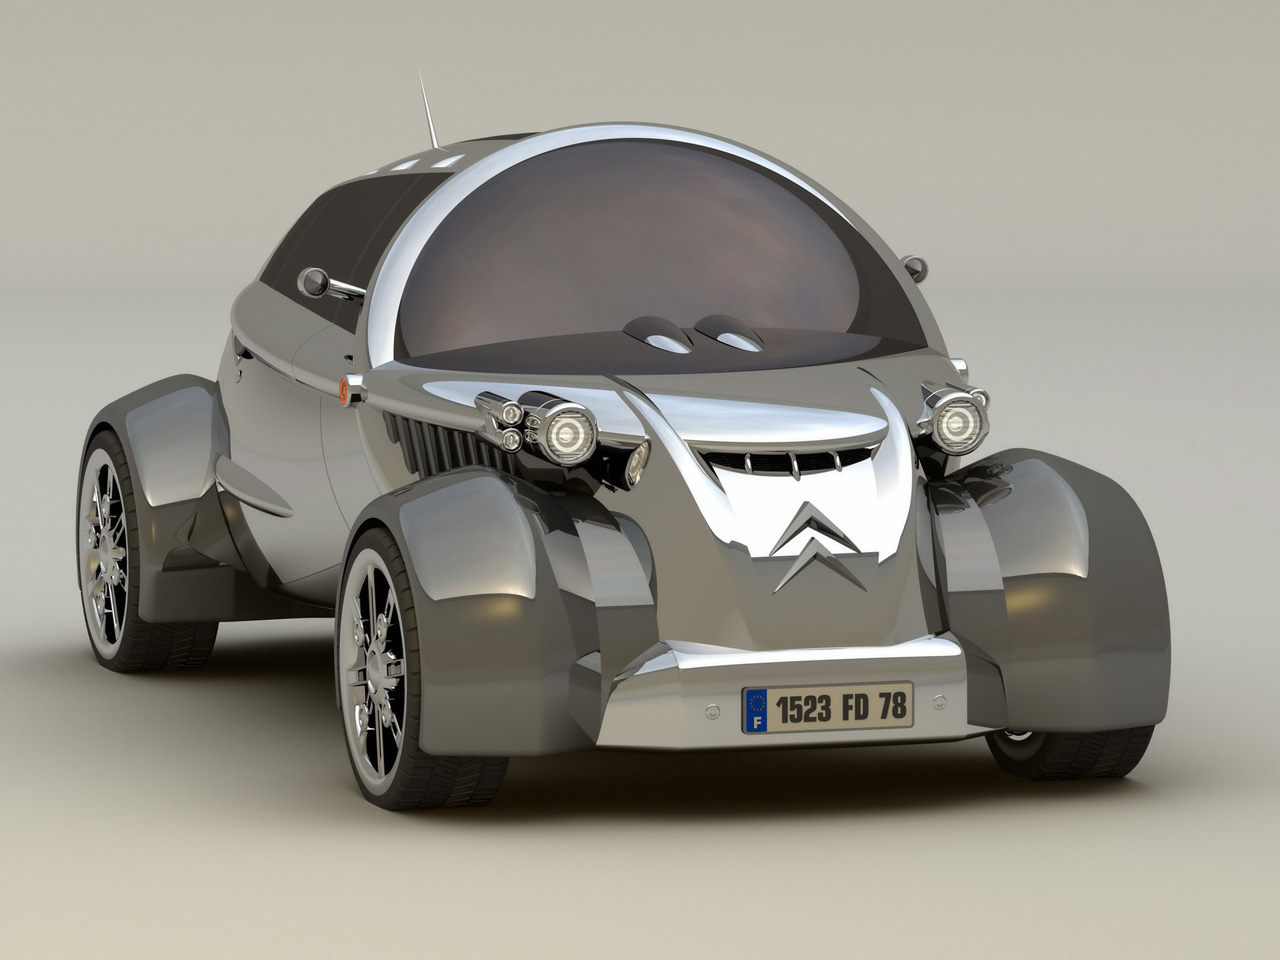 2008 Citroen 2CV Concept Design by David Portela